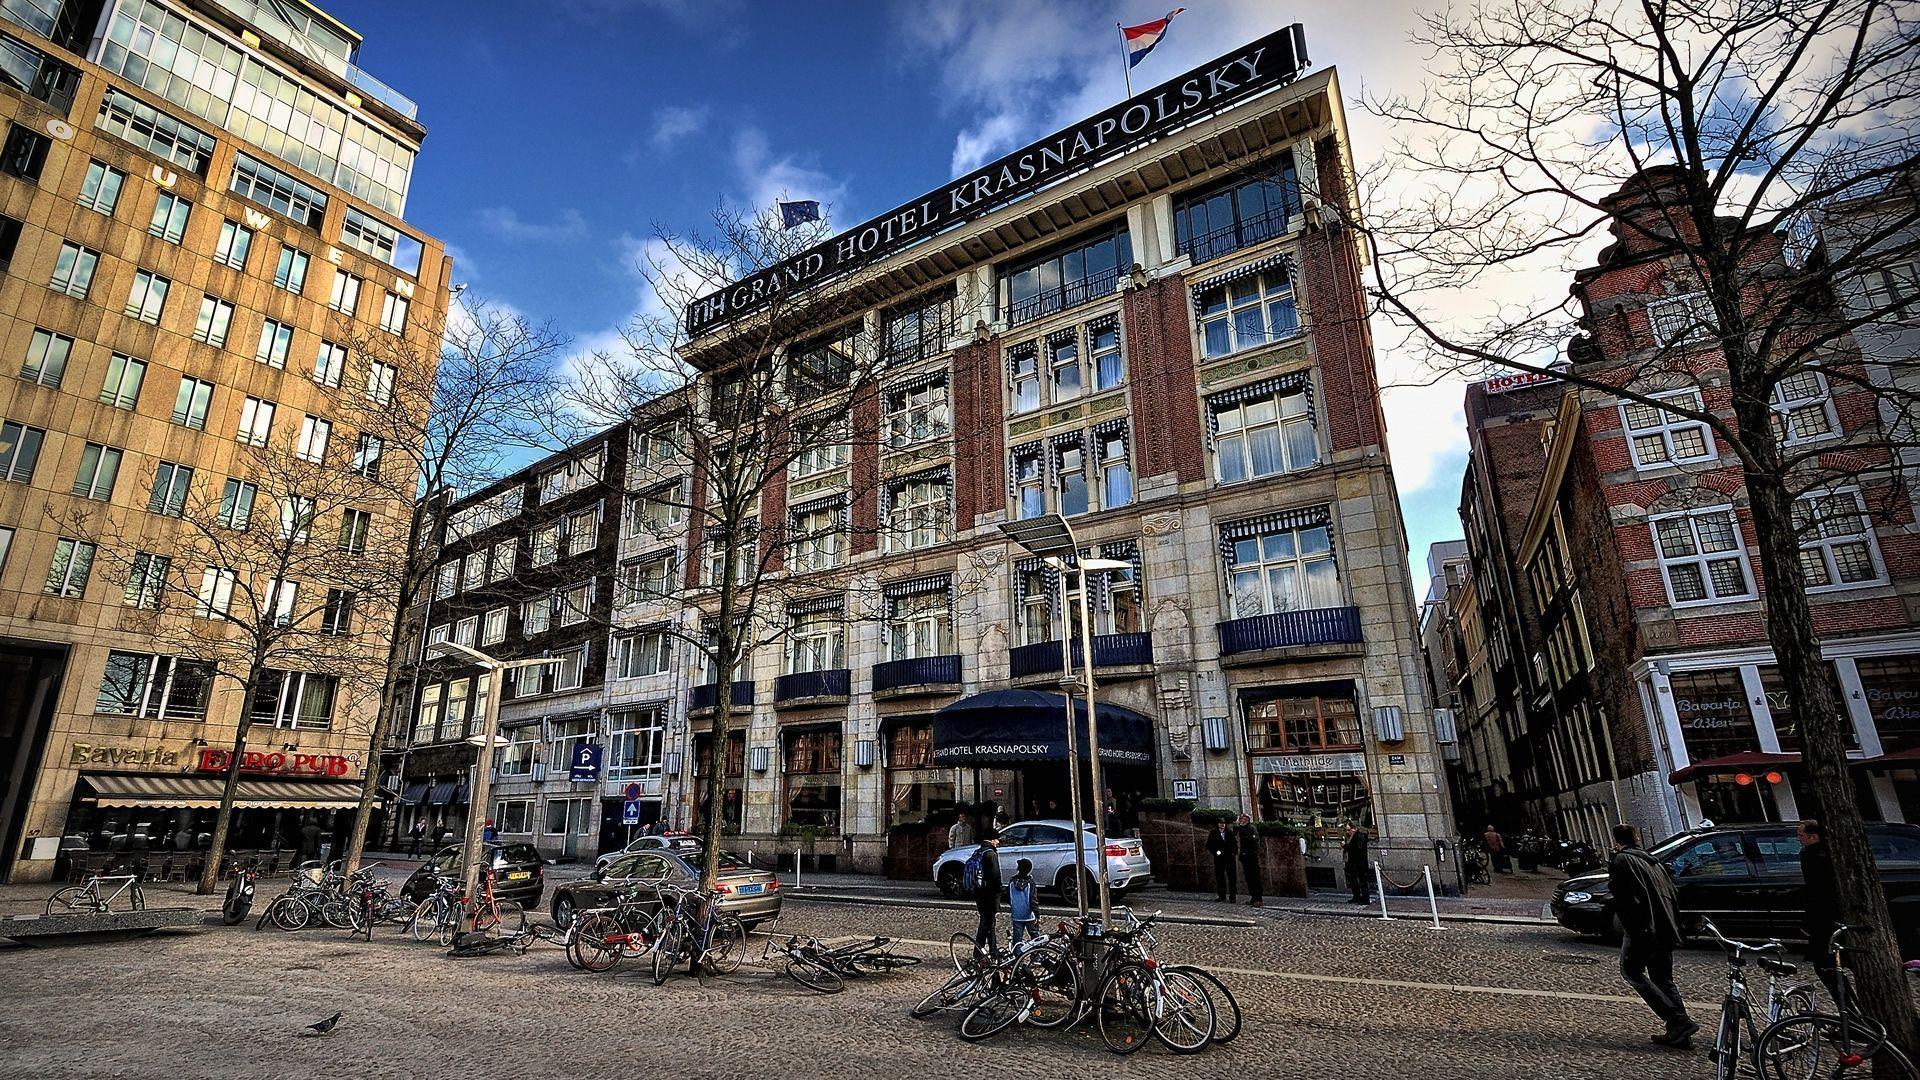 آمستردام (Amsterdam)